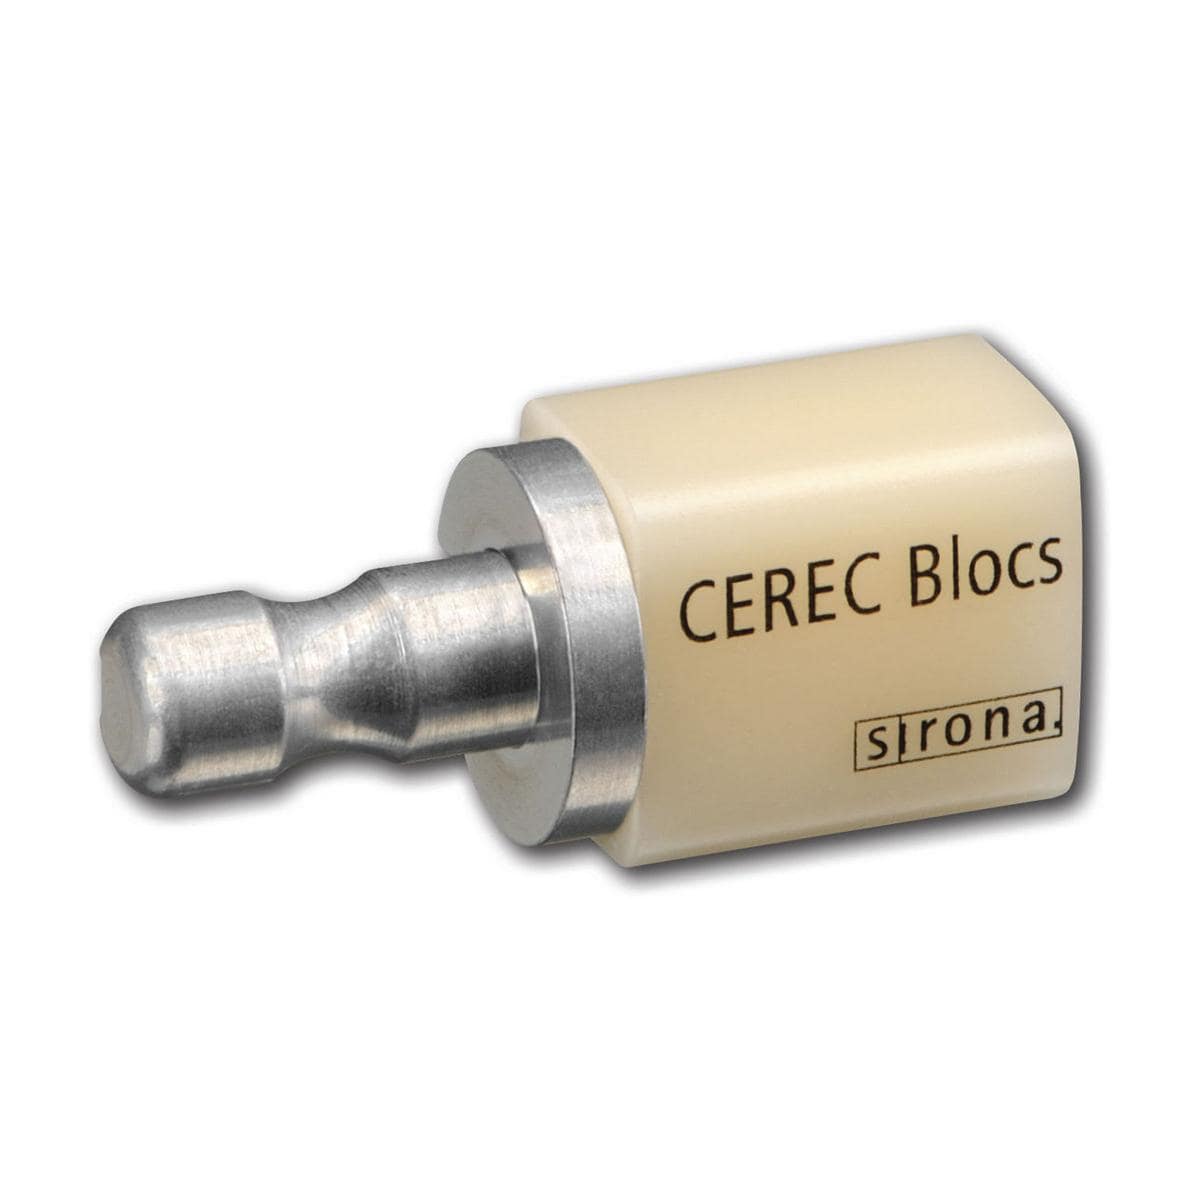 CEREC Blocs C14 - A3,5C, 8 stuks